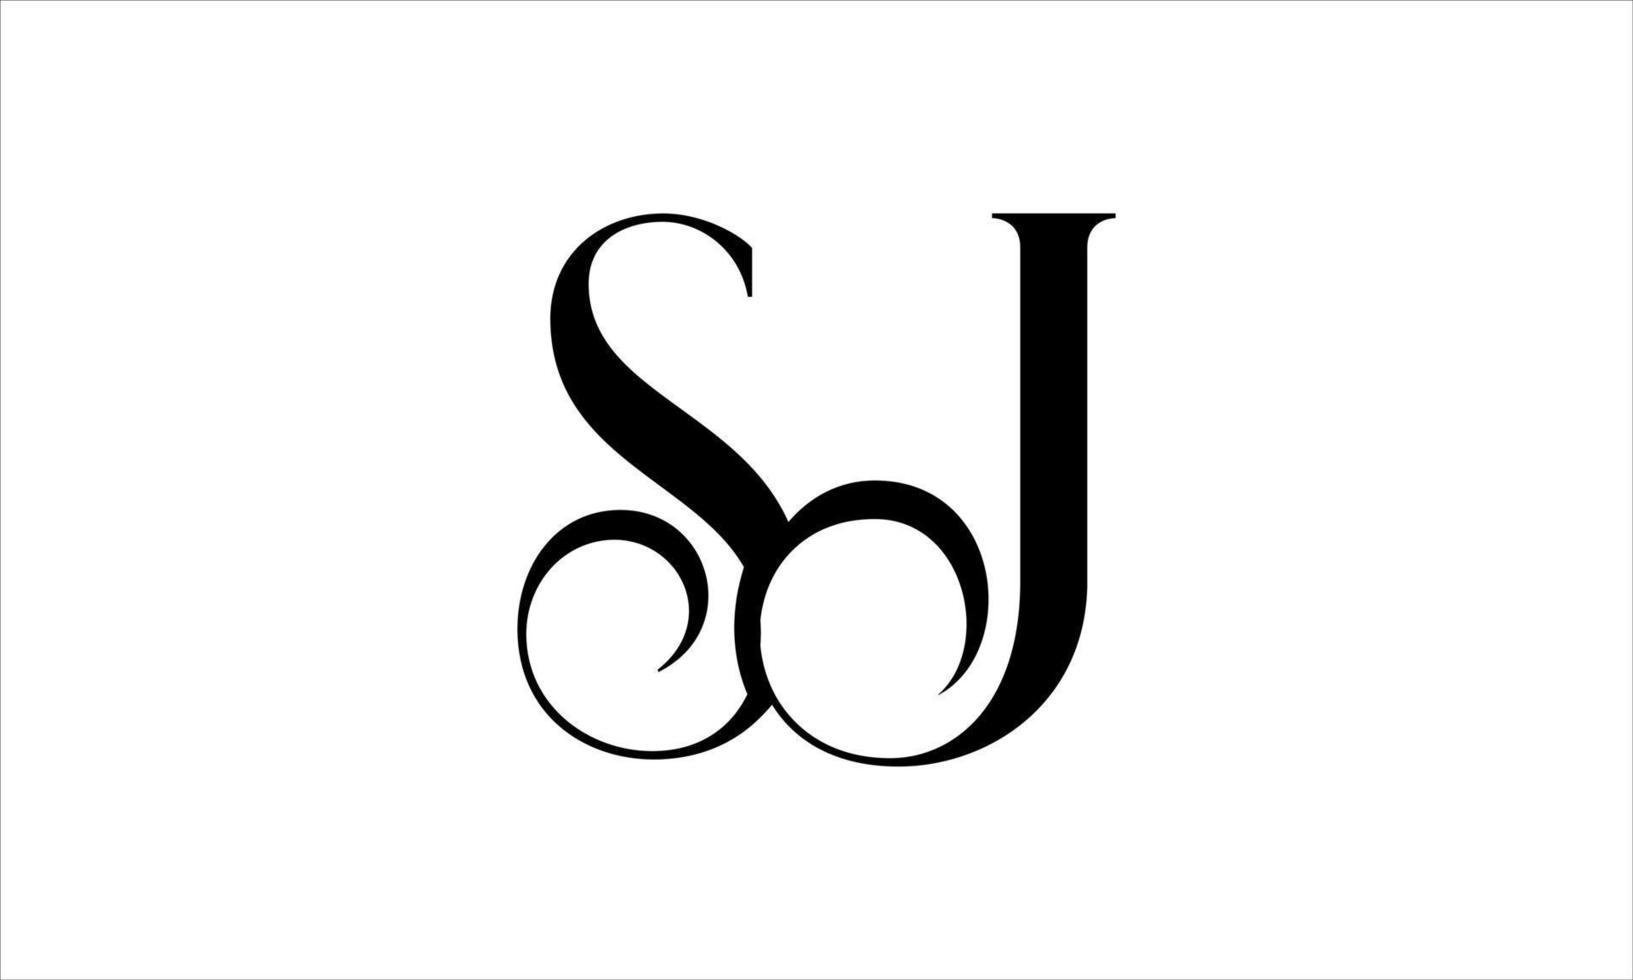 création de logo sj. vecteur de conception d'icône de logo de lettre sj initiale vecteur pro.